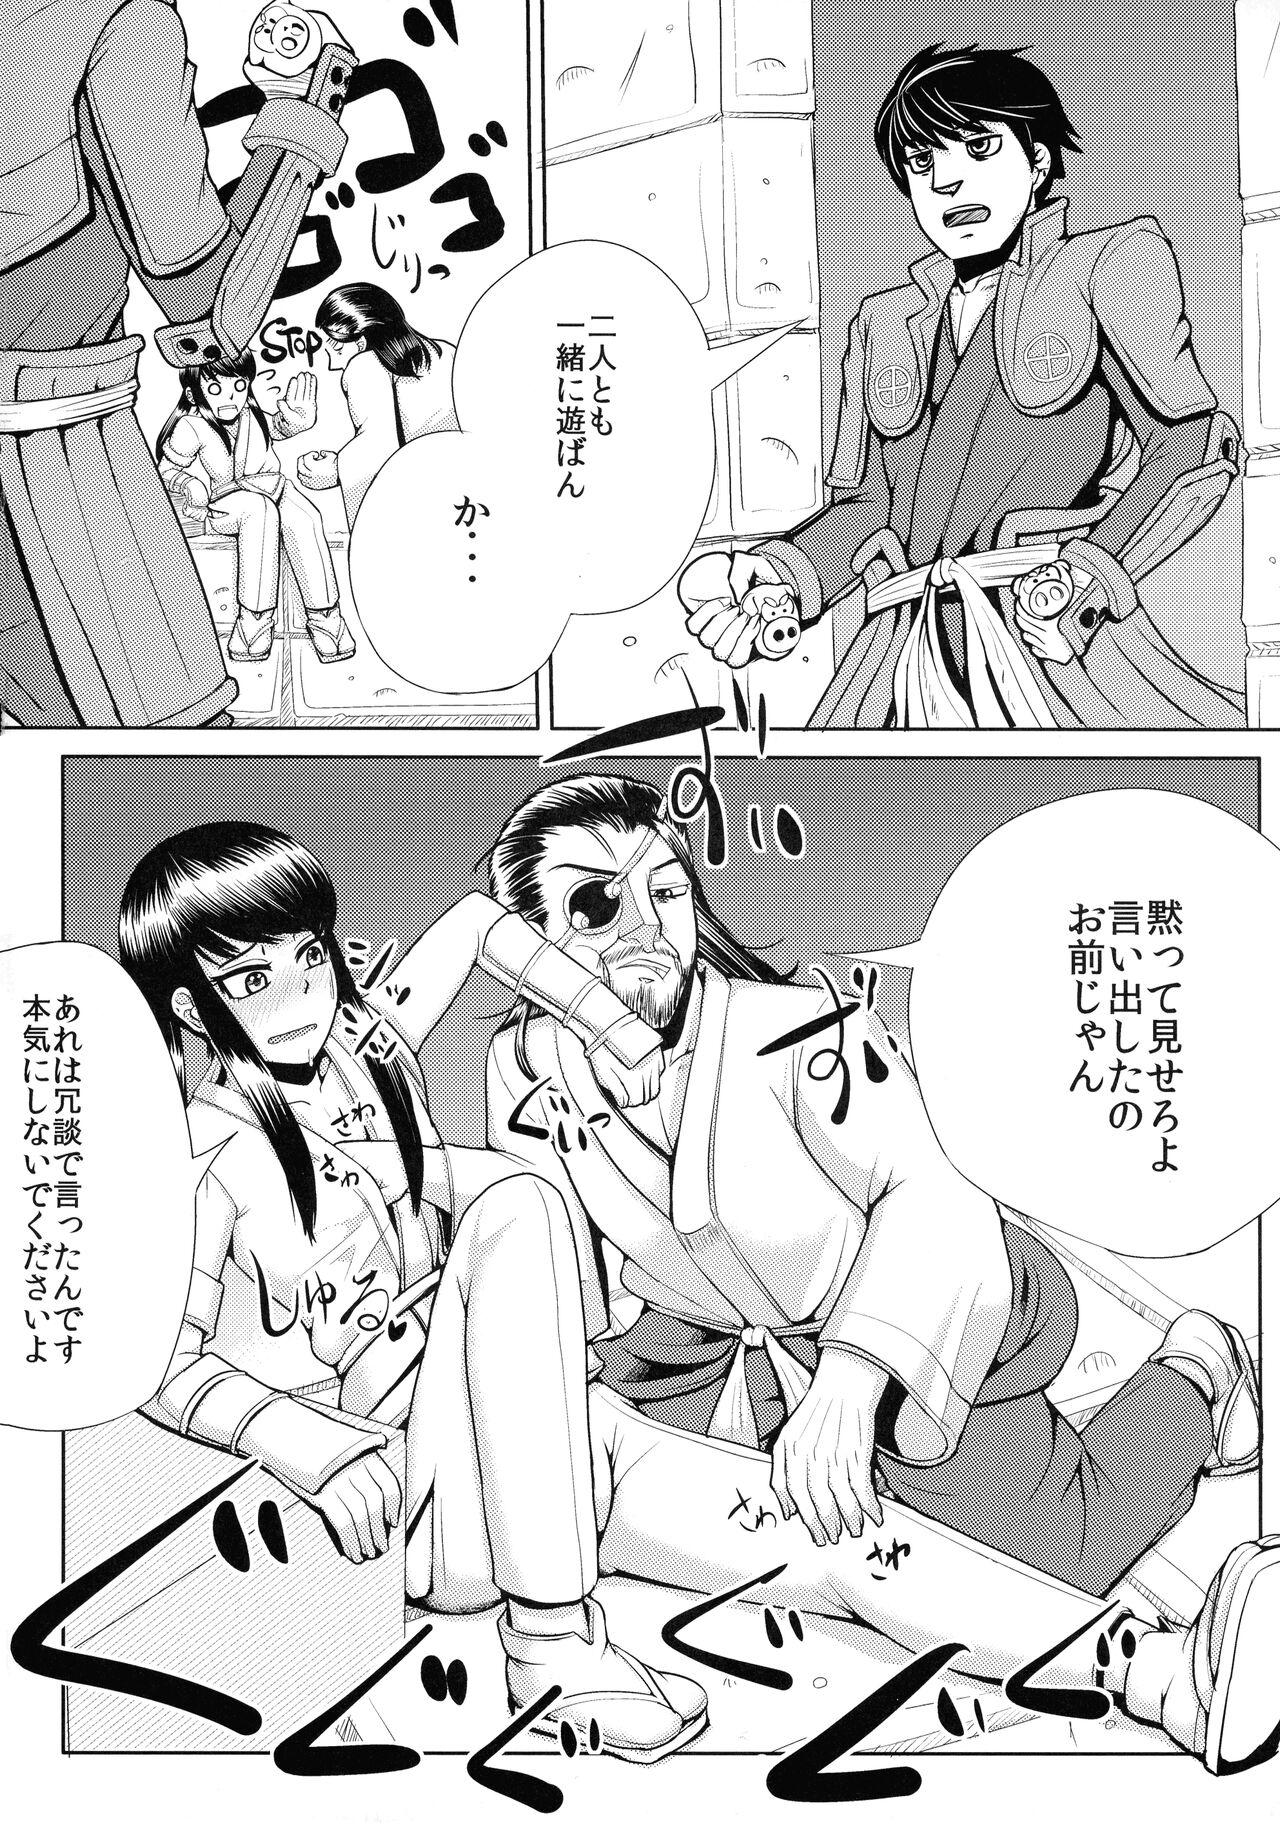 Atm Nagasarerumama Yoicchi to Oppai-nu ga Toyotoyo to Nobunobu ni Yararechau Hon - Drifters Hard Core Sex - Page 4